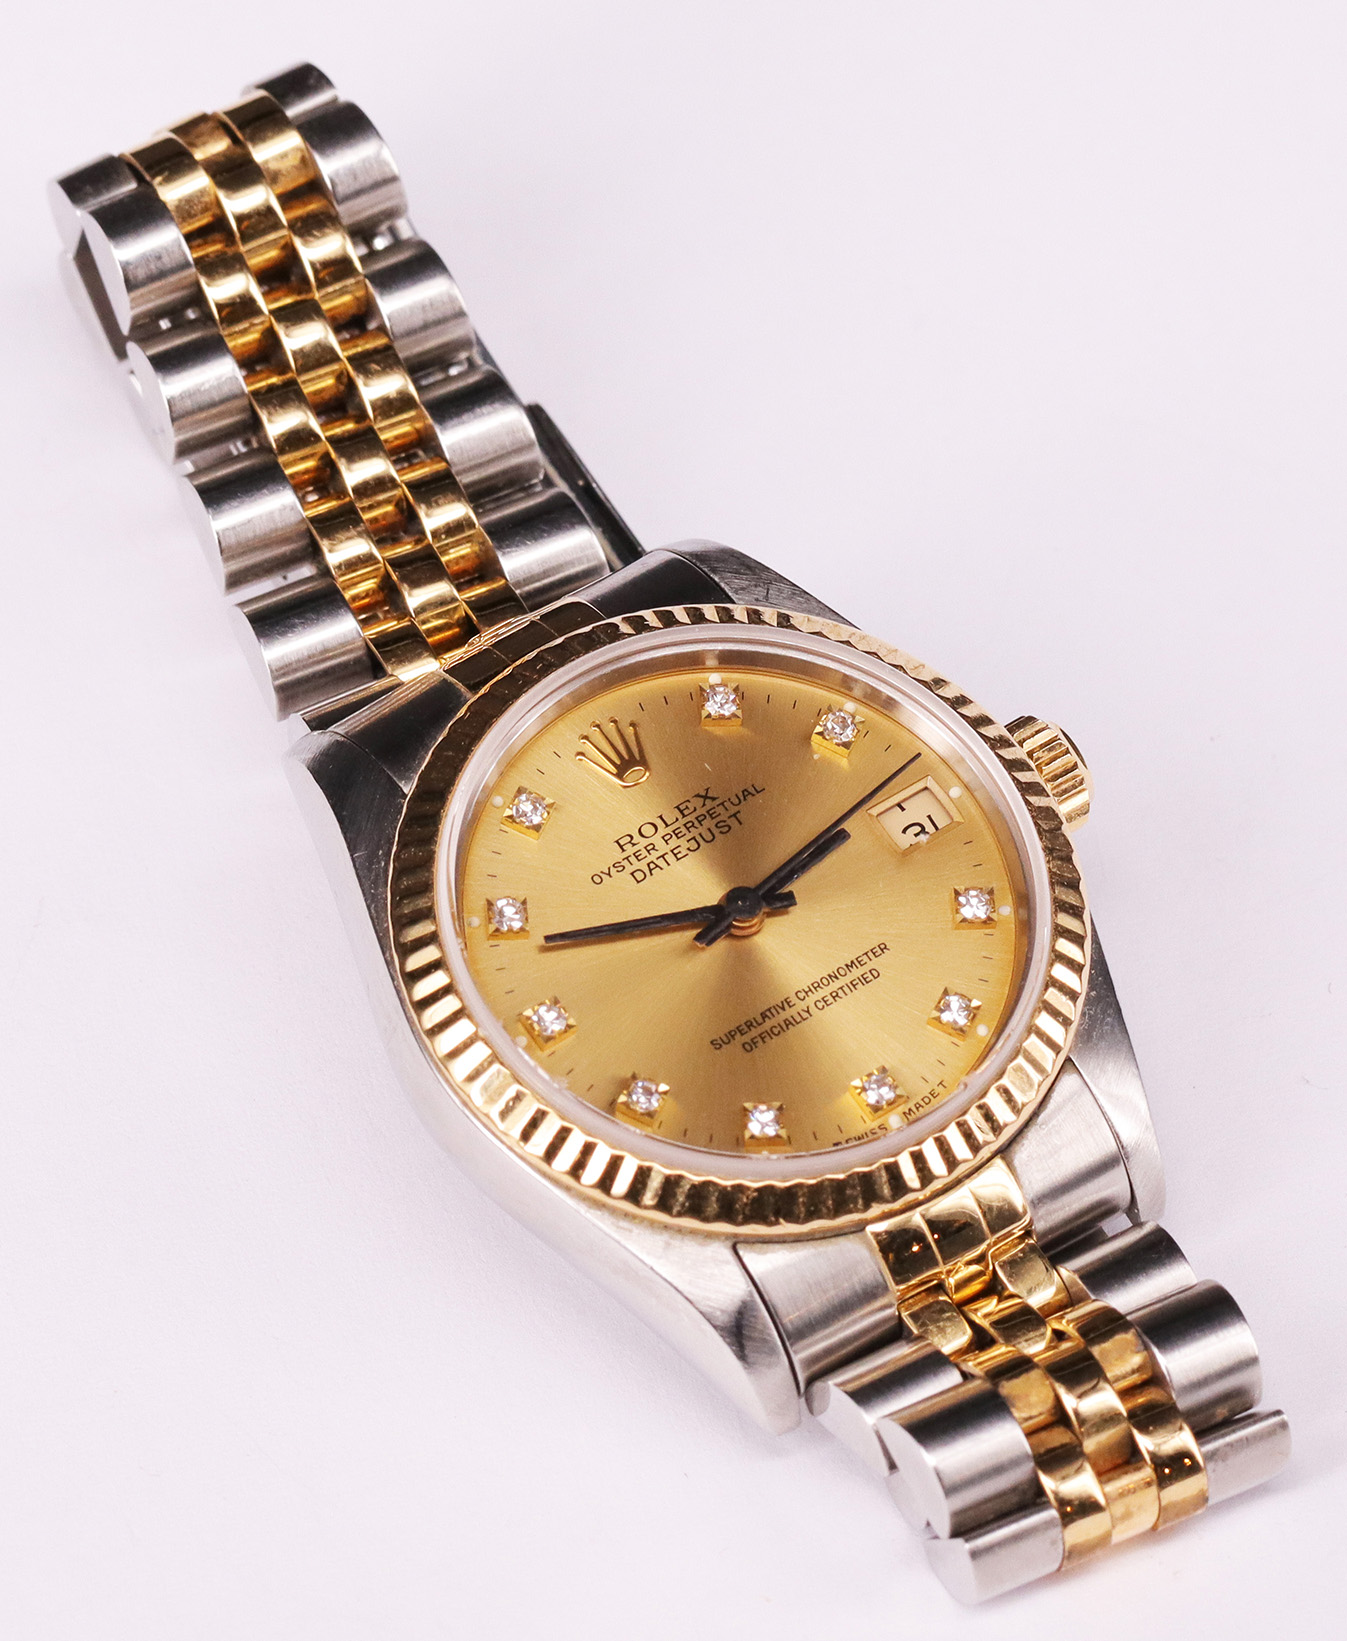 Rolex, Oyster Perpetual Date Just, Armbanduhr, goldfarbenes Zifferblatt mit Diamanten als Uhrzeiten, - Image 6 of 7